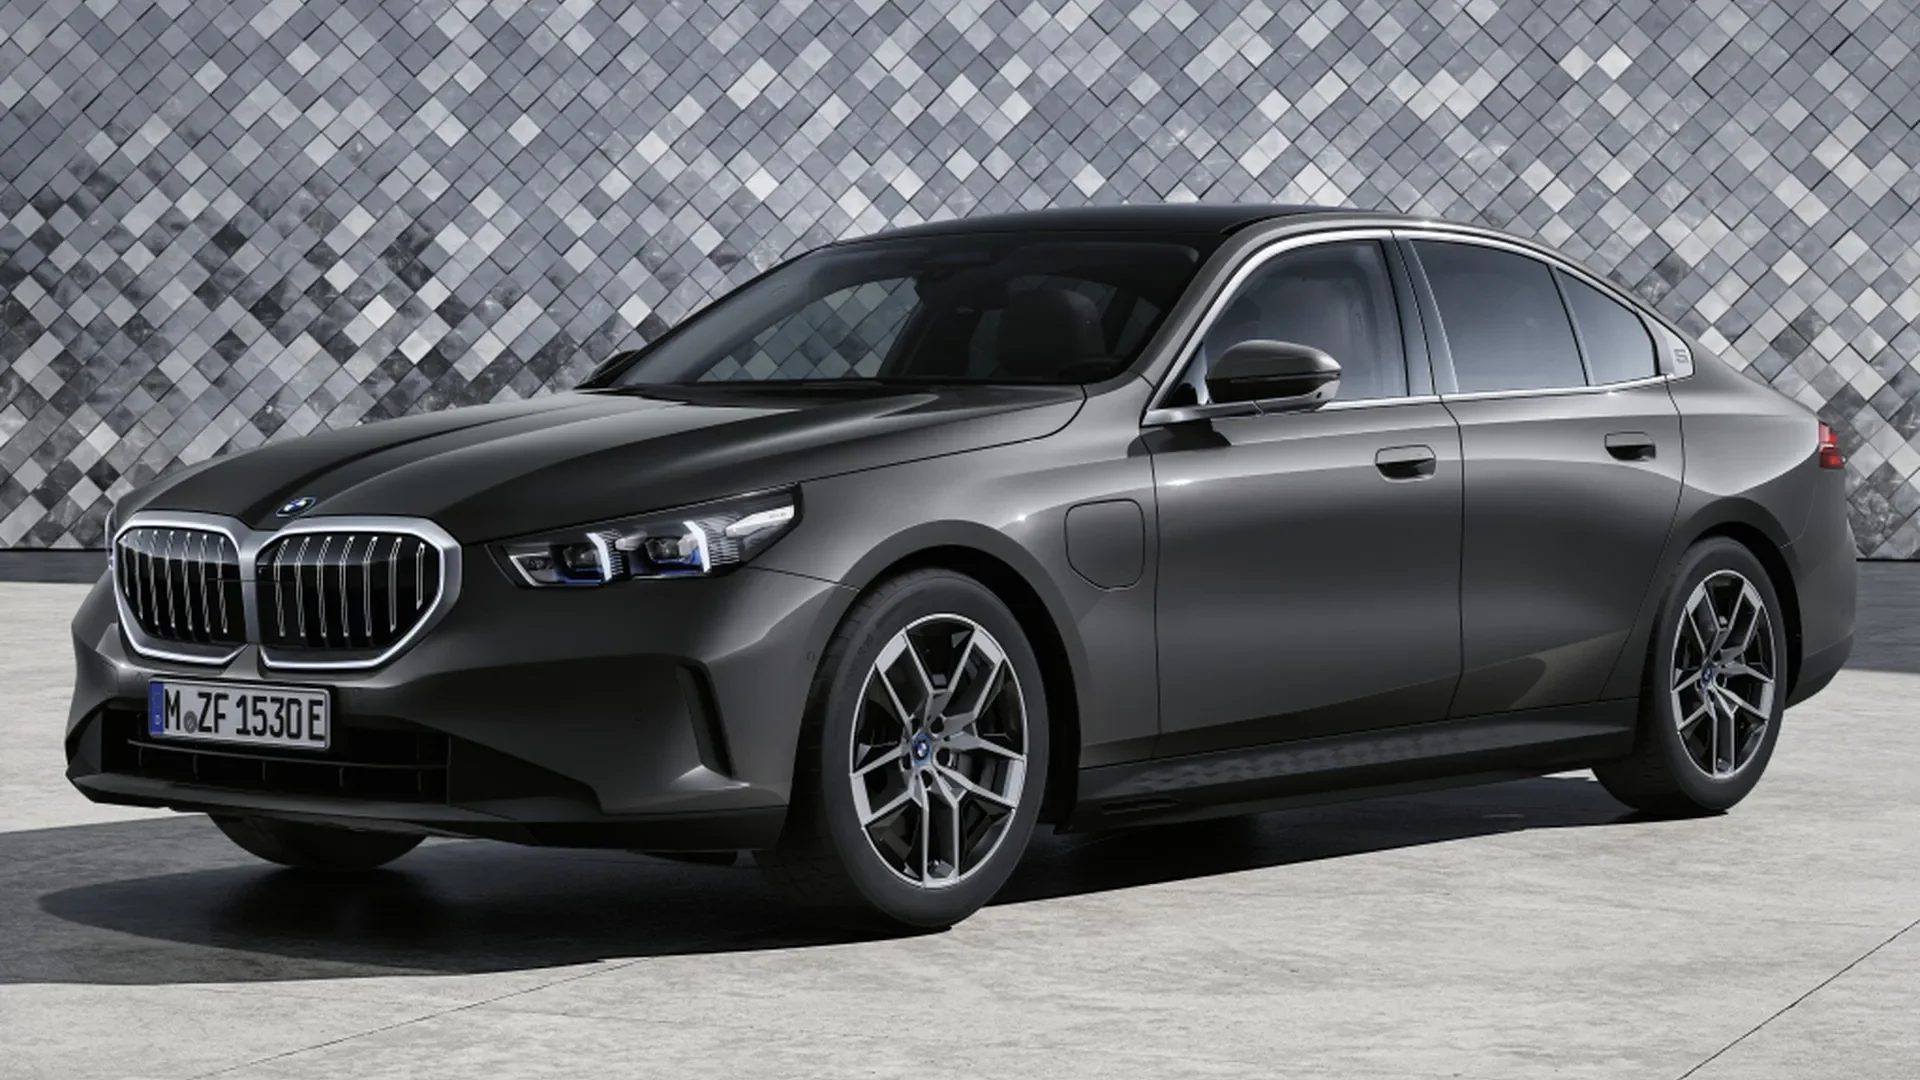 La nueva generación del BMW Serie 5 ya ha sido presentada